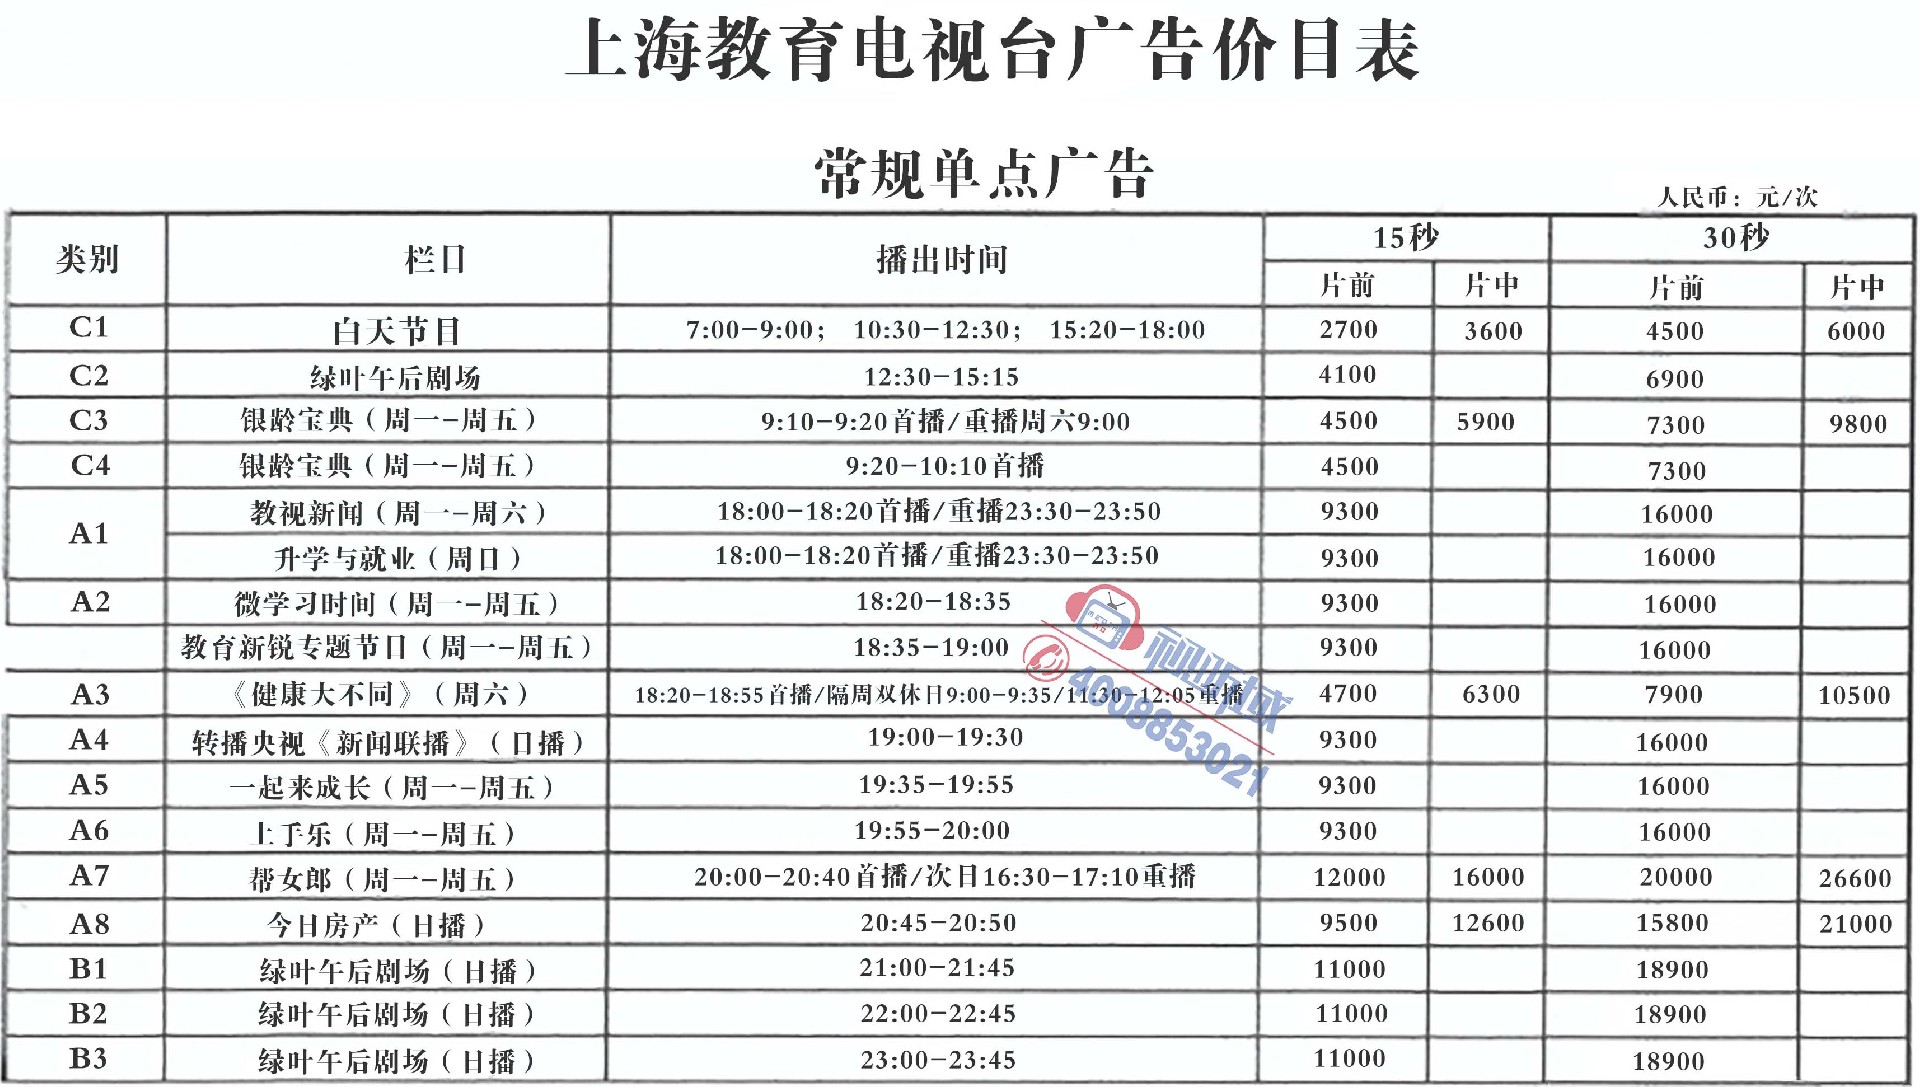 上海教育电视台广告价目表-1.jpg